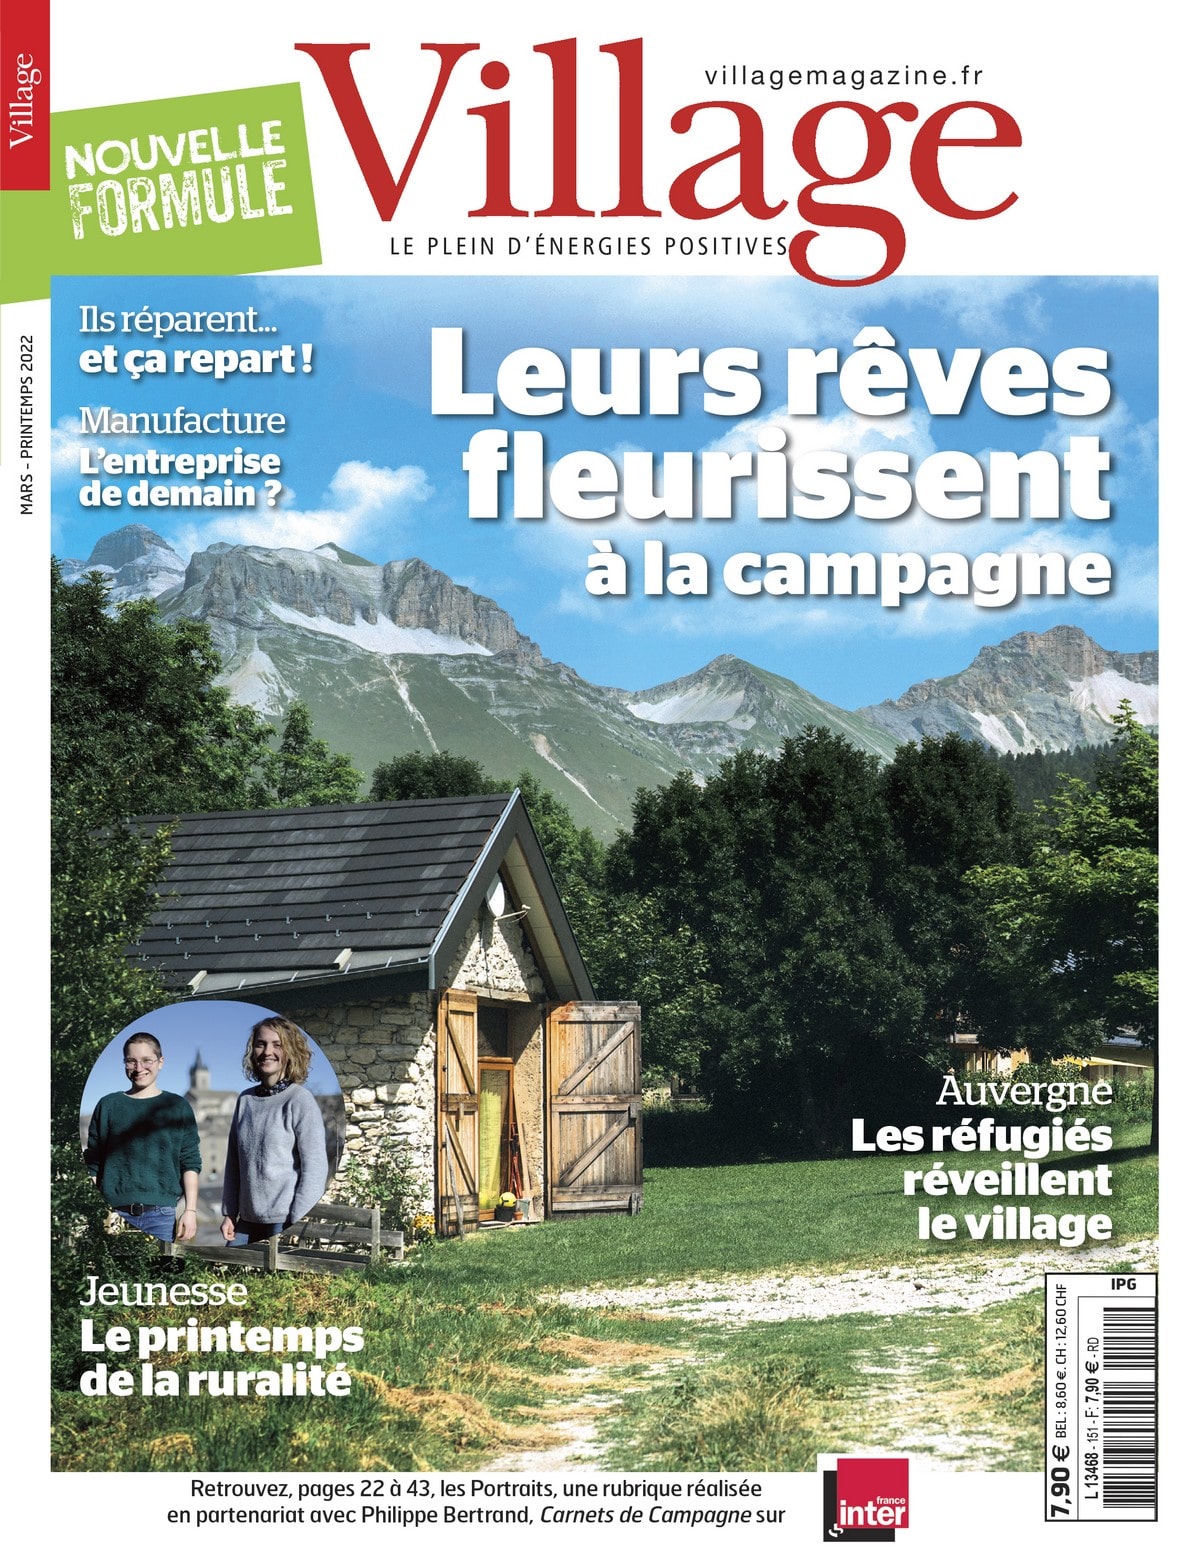 Couverture du magazine Village du printemps qui vient d'arriver en kiosque.